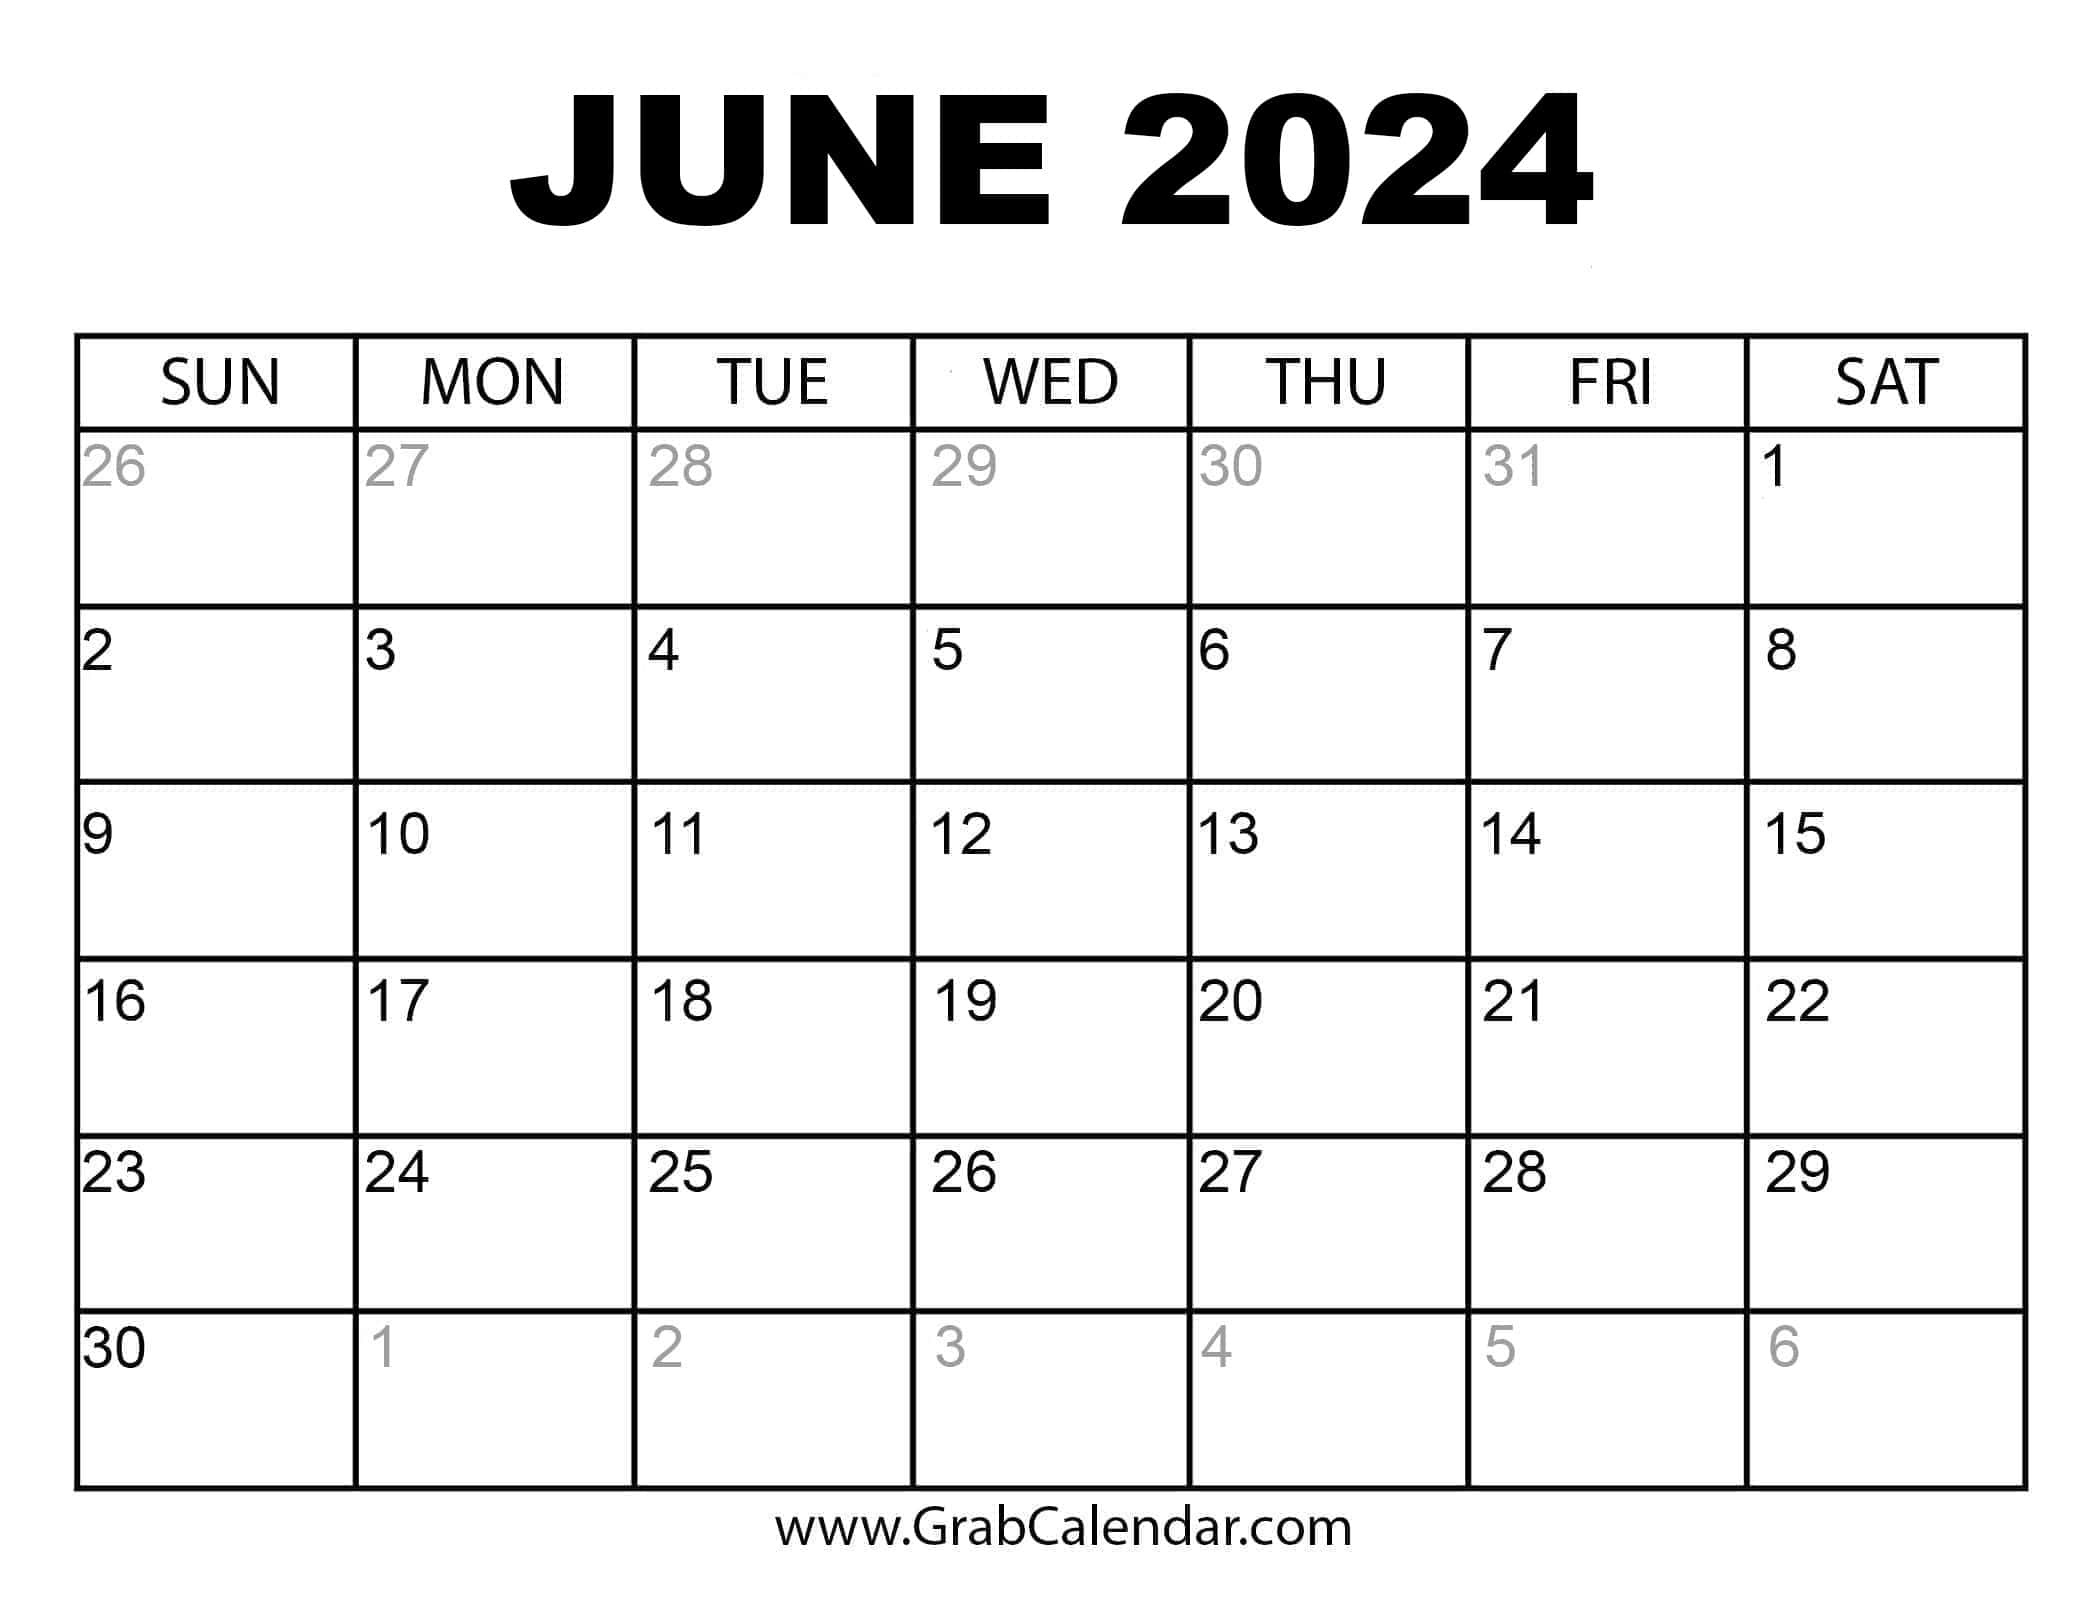 Printable June 2024 Calendar pertaining to June 2024 Calendar Image